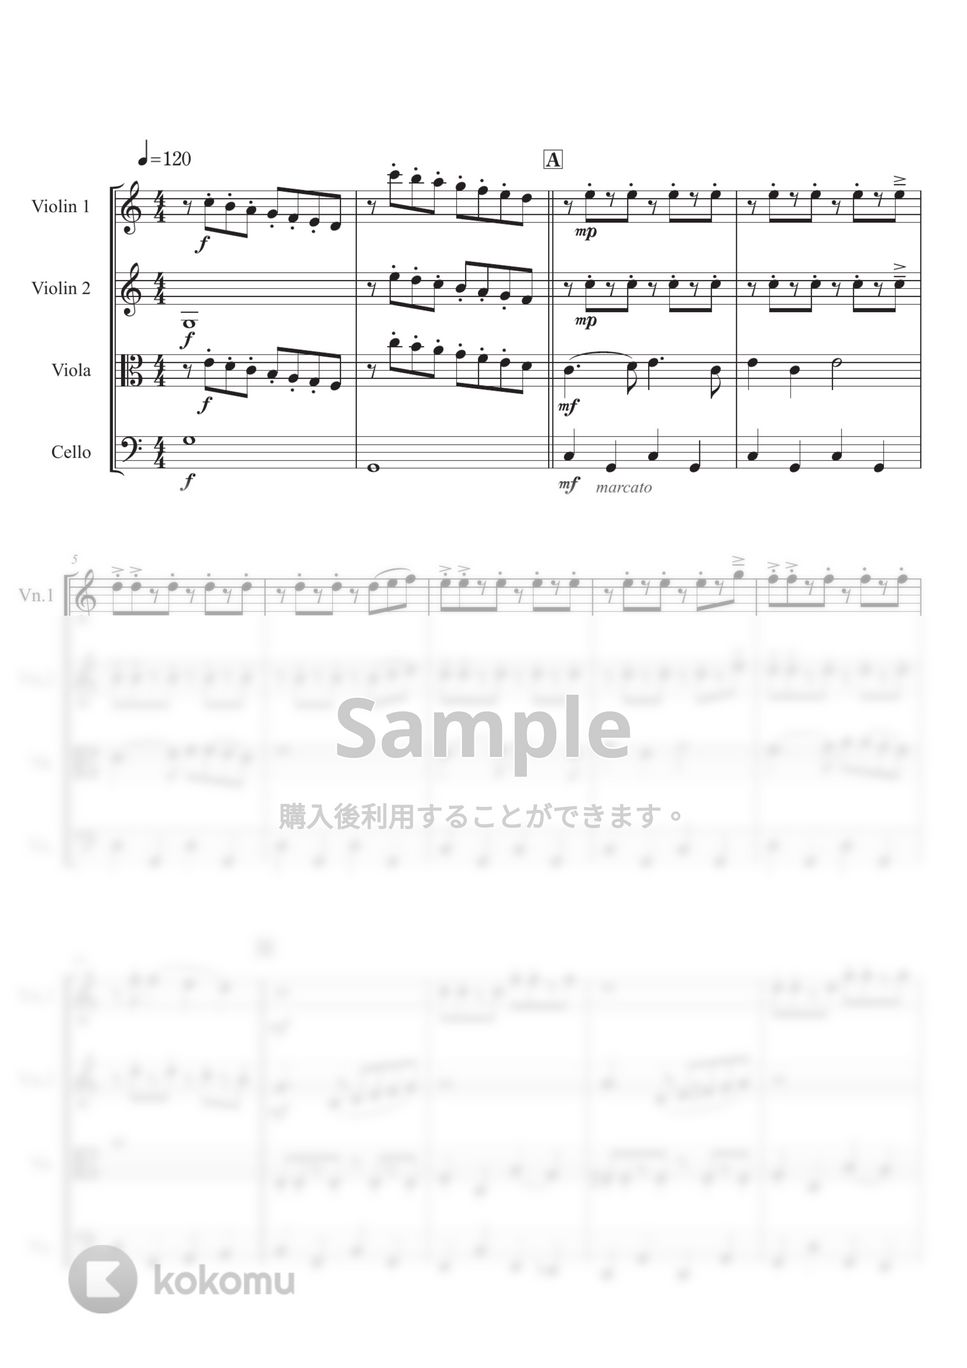 Richard Rodgers - 【弦楽四重奏】ドレミのうた (『サウンド・オブ・ミュージック』より) by 栗原義継